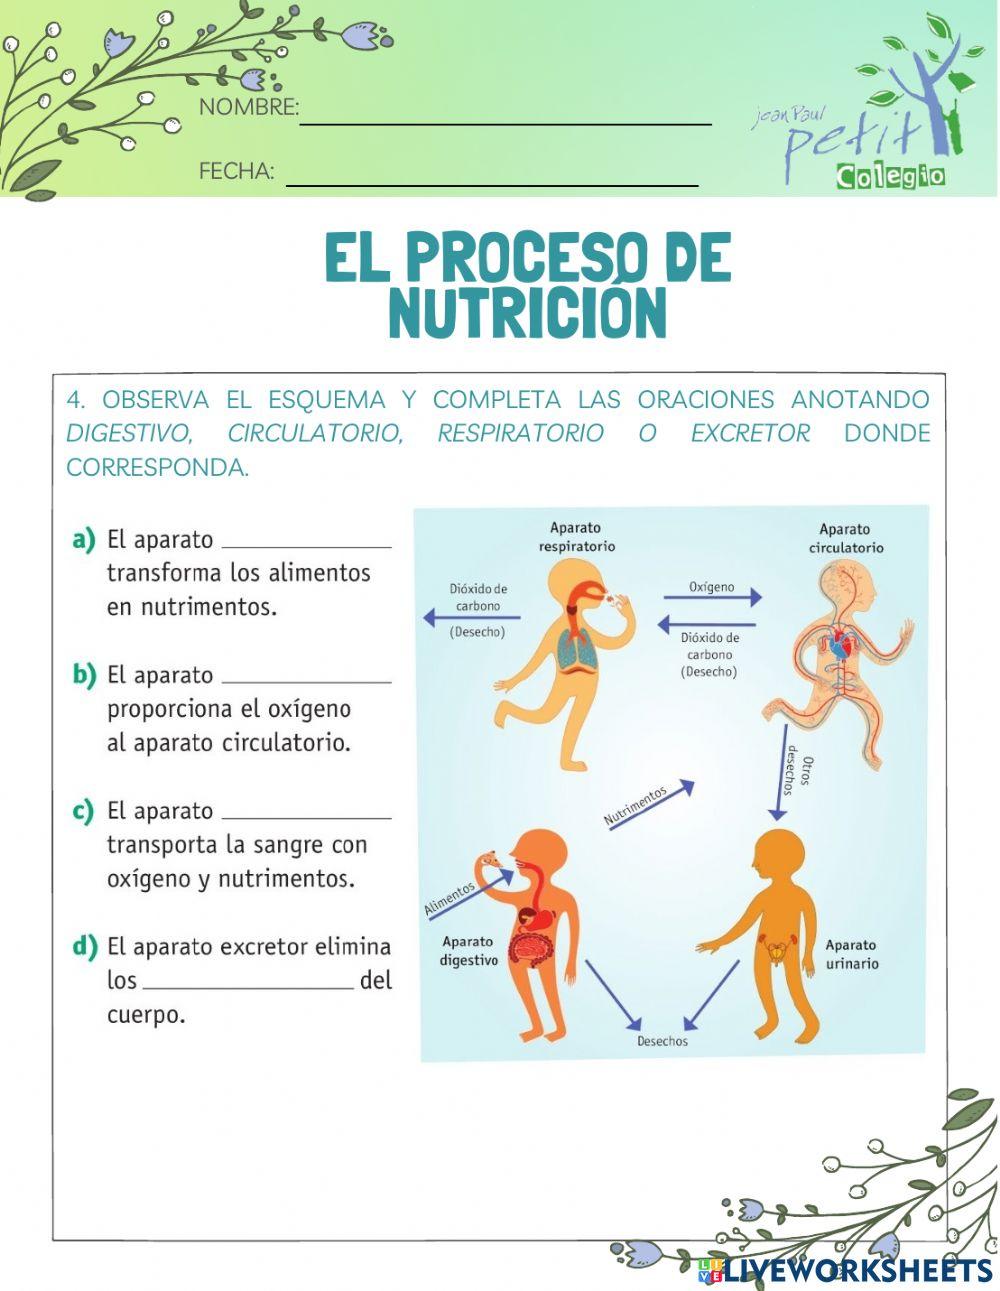 El proceso de nutrición